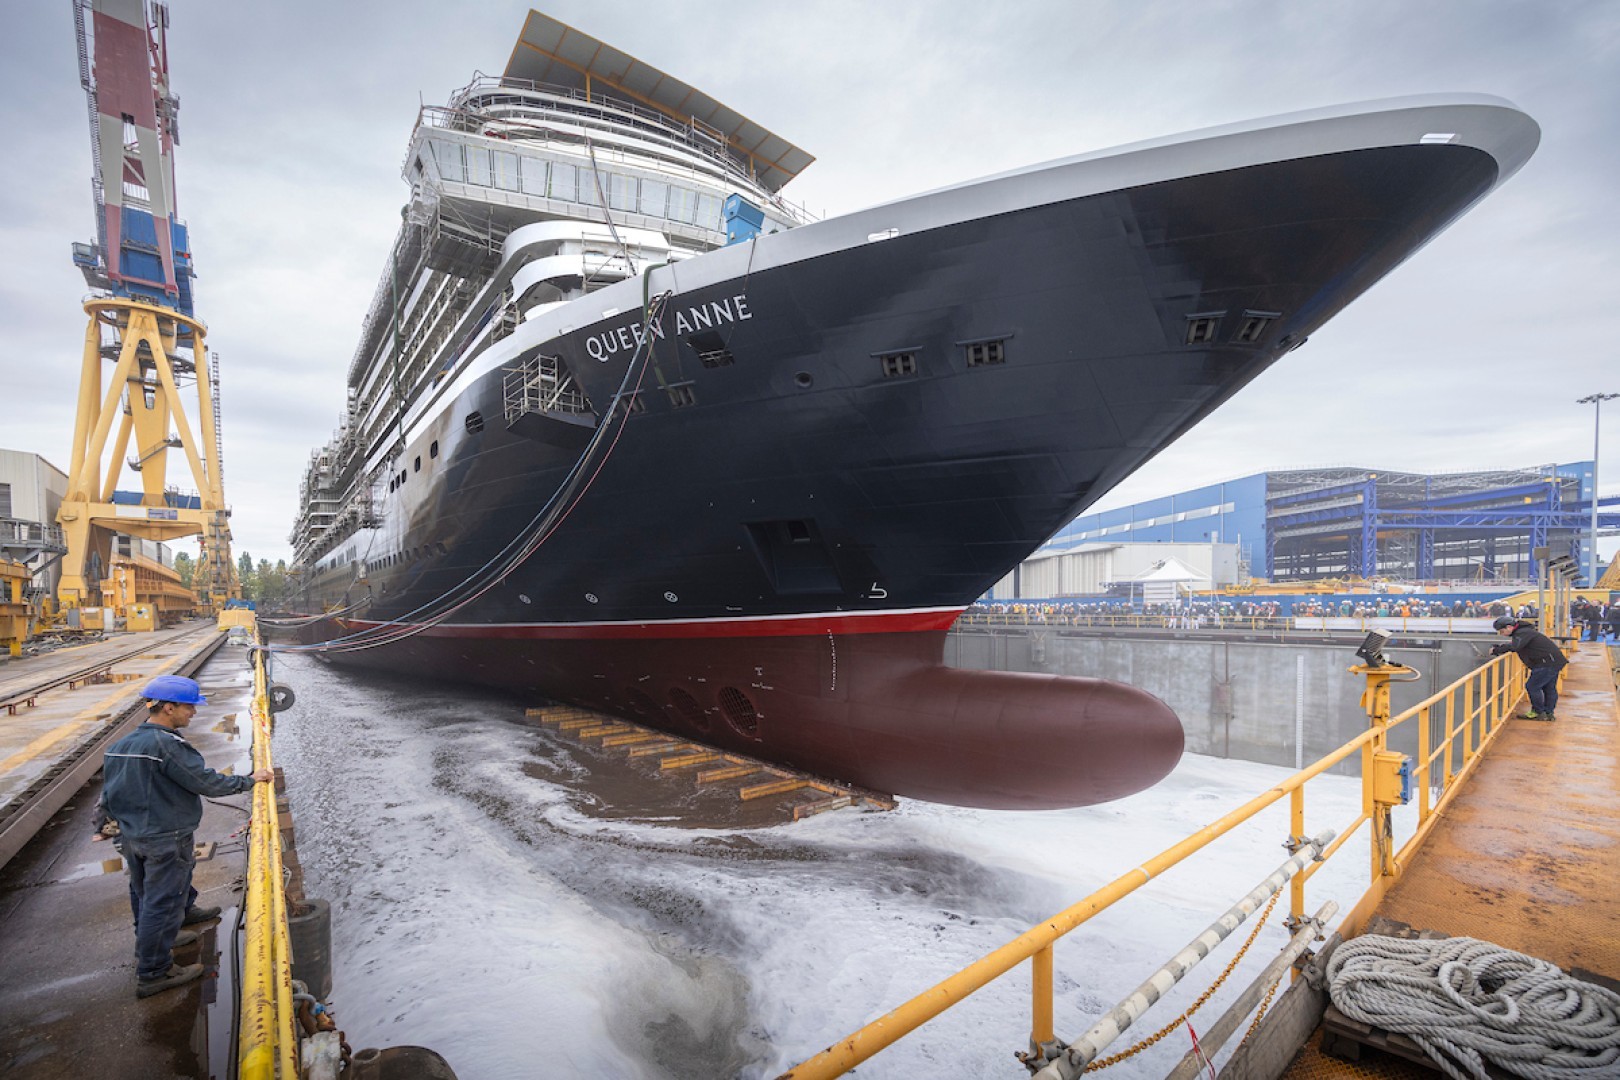 Cunard celebra l'uscita del carro dalla Queen Anne con una cerimonia importante in Italia